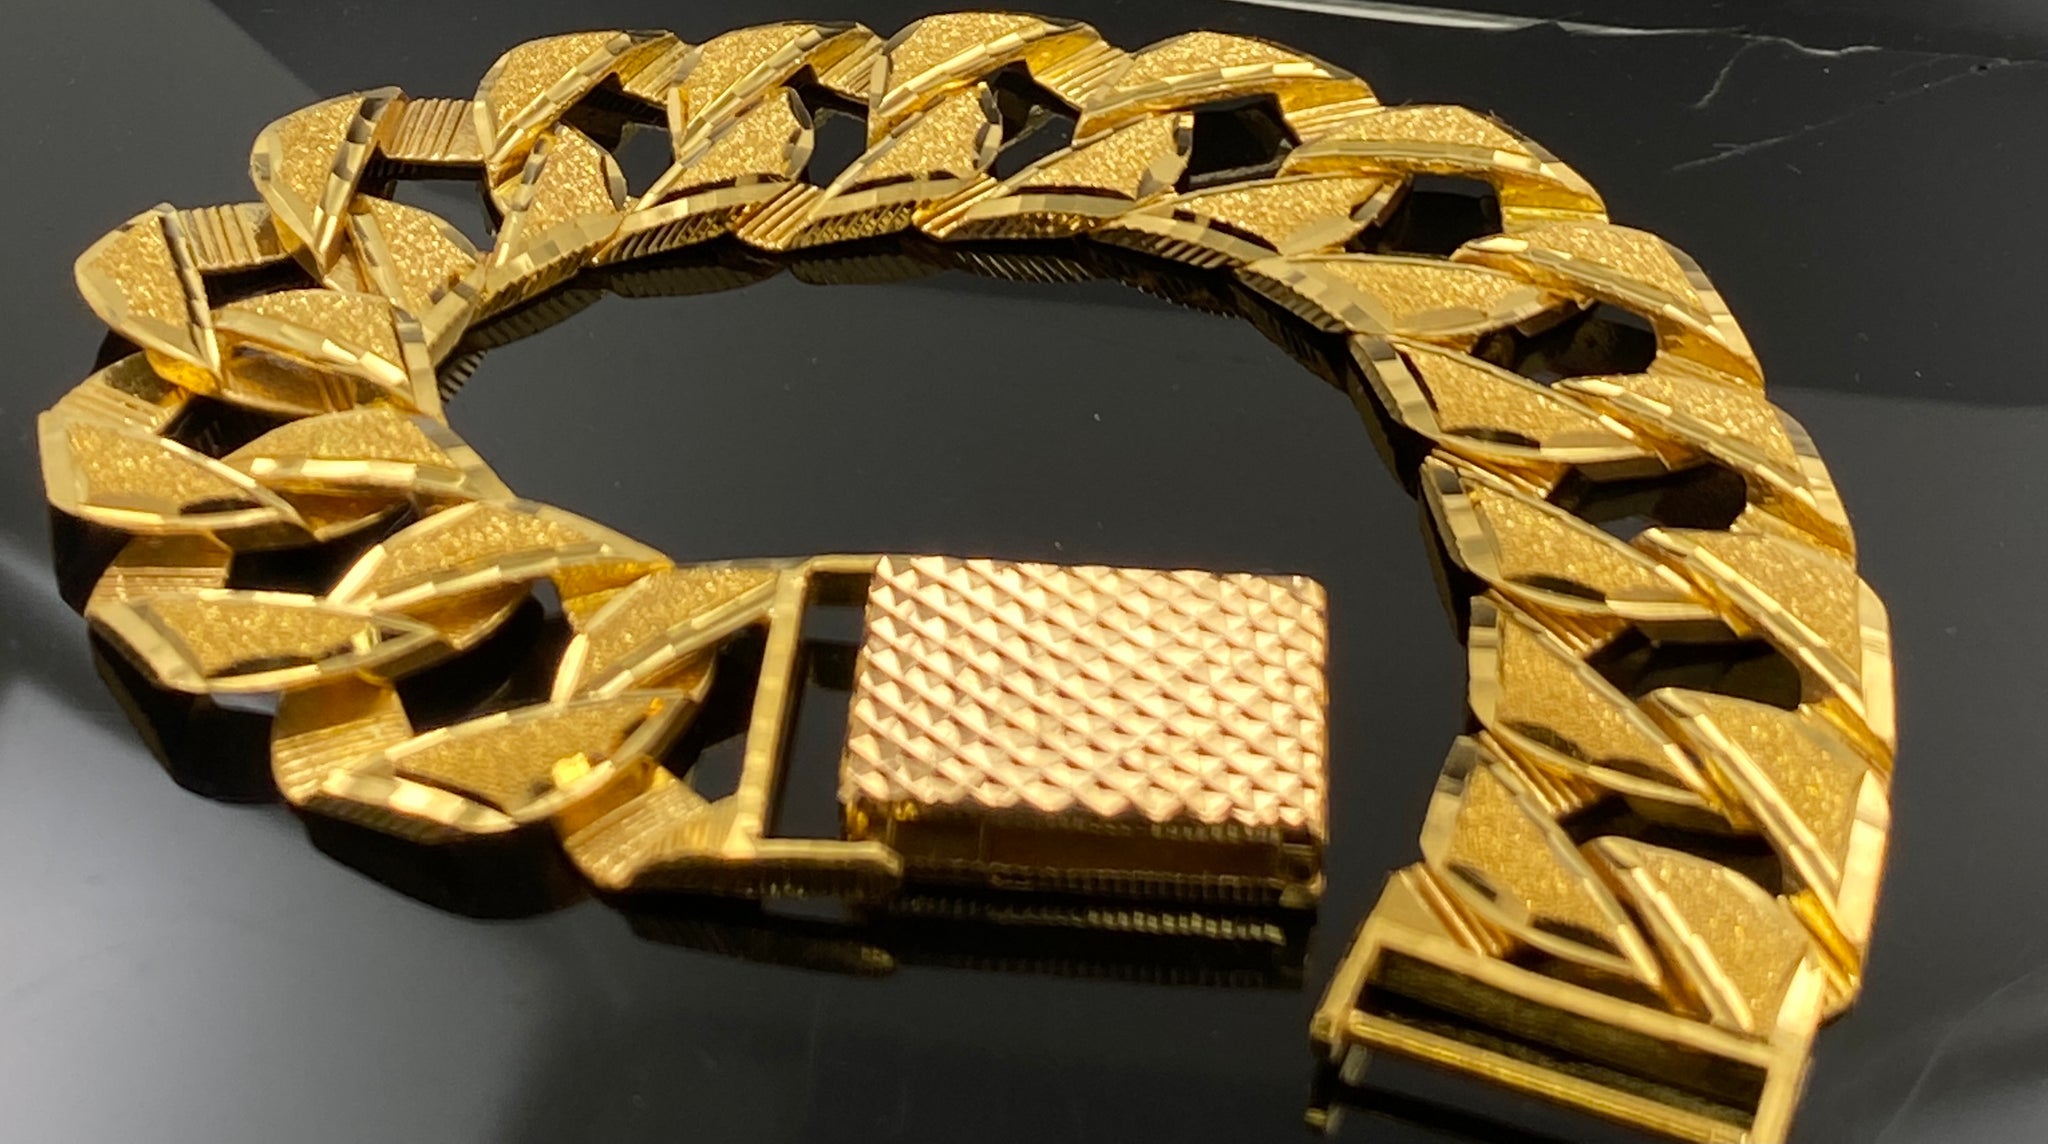 Buy 22k Plain Gold Men Bracelet 65VH4896 Online from Vaibhav Jewellers